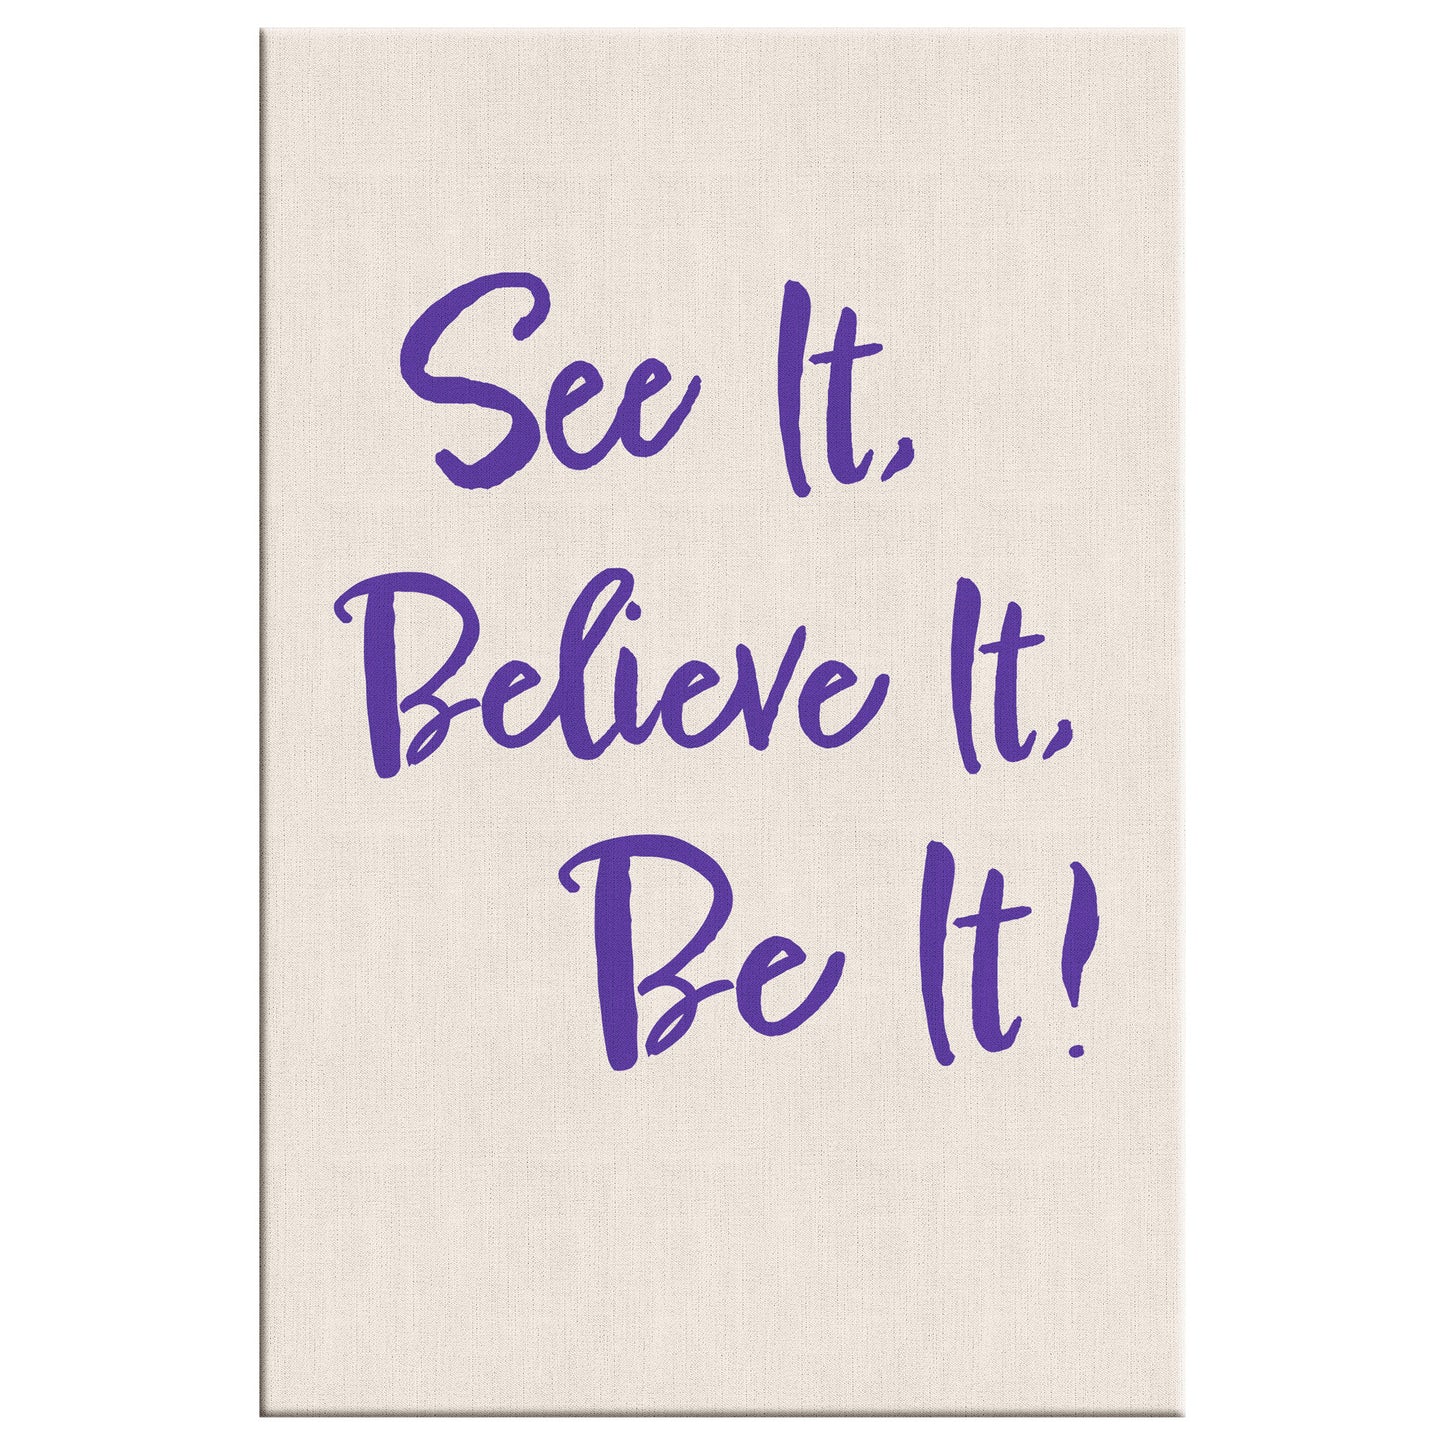 See it, Believe it, Be it!